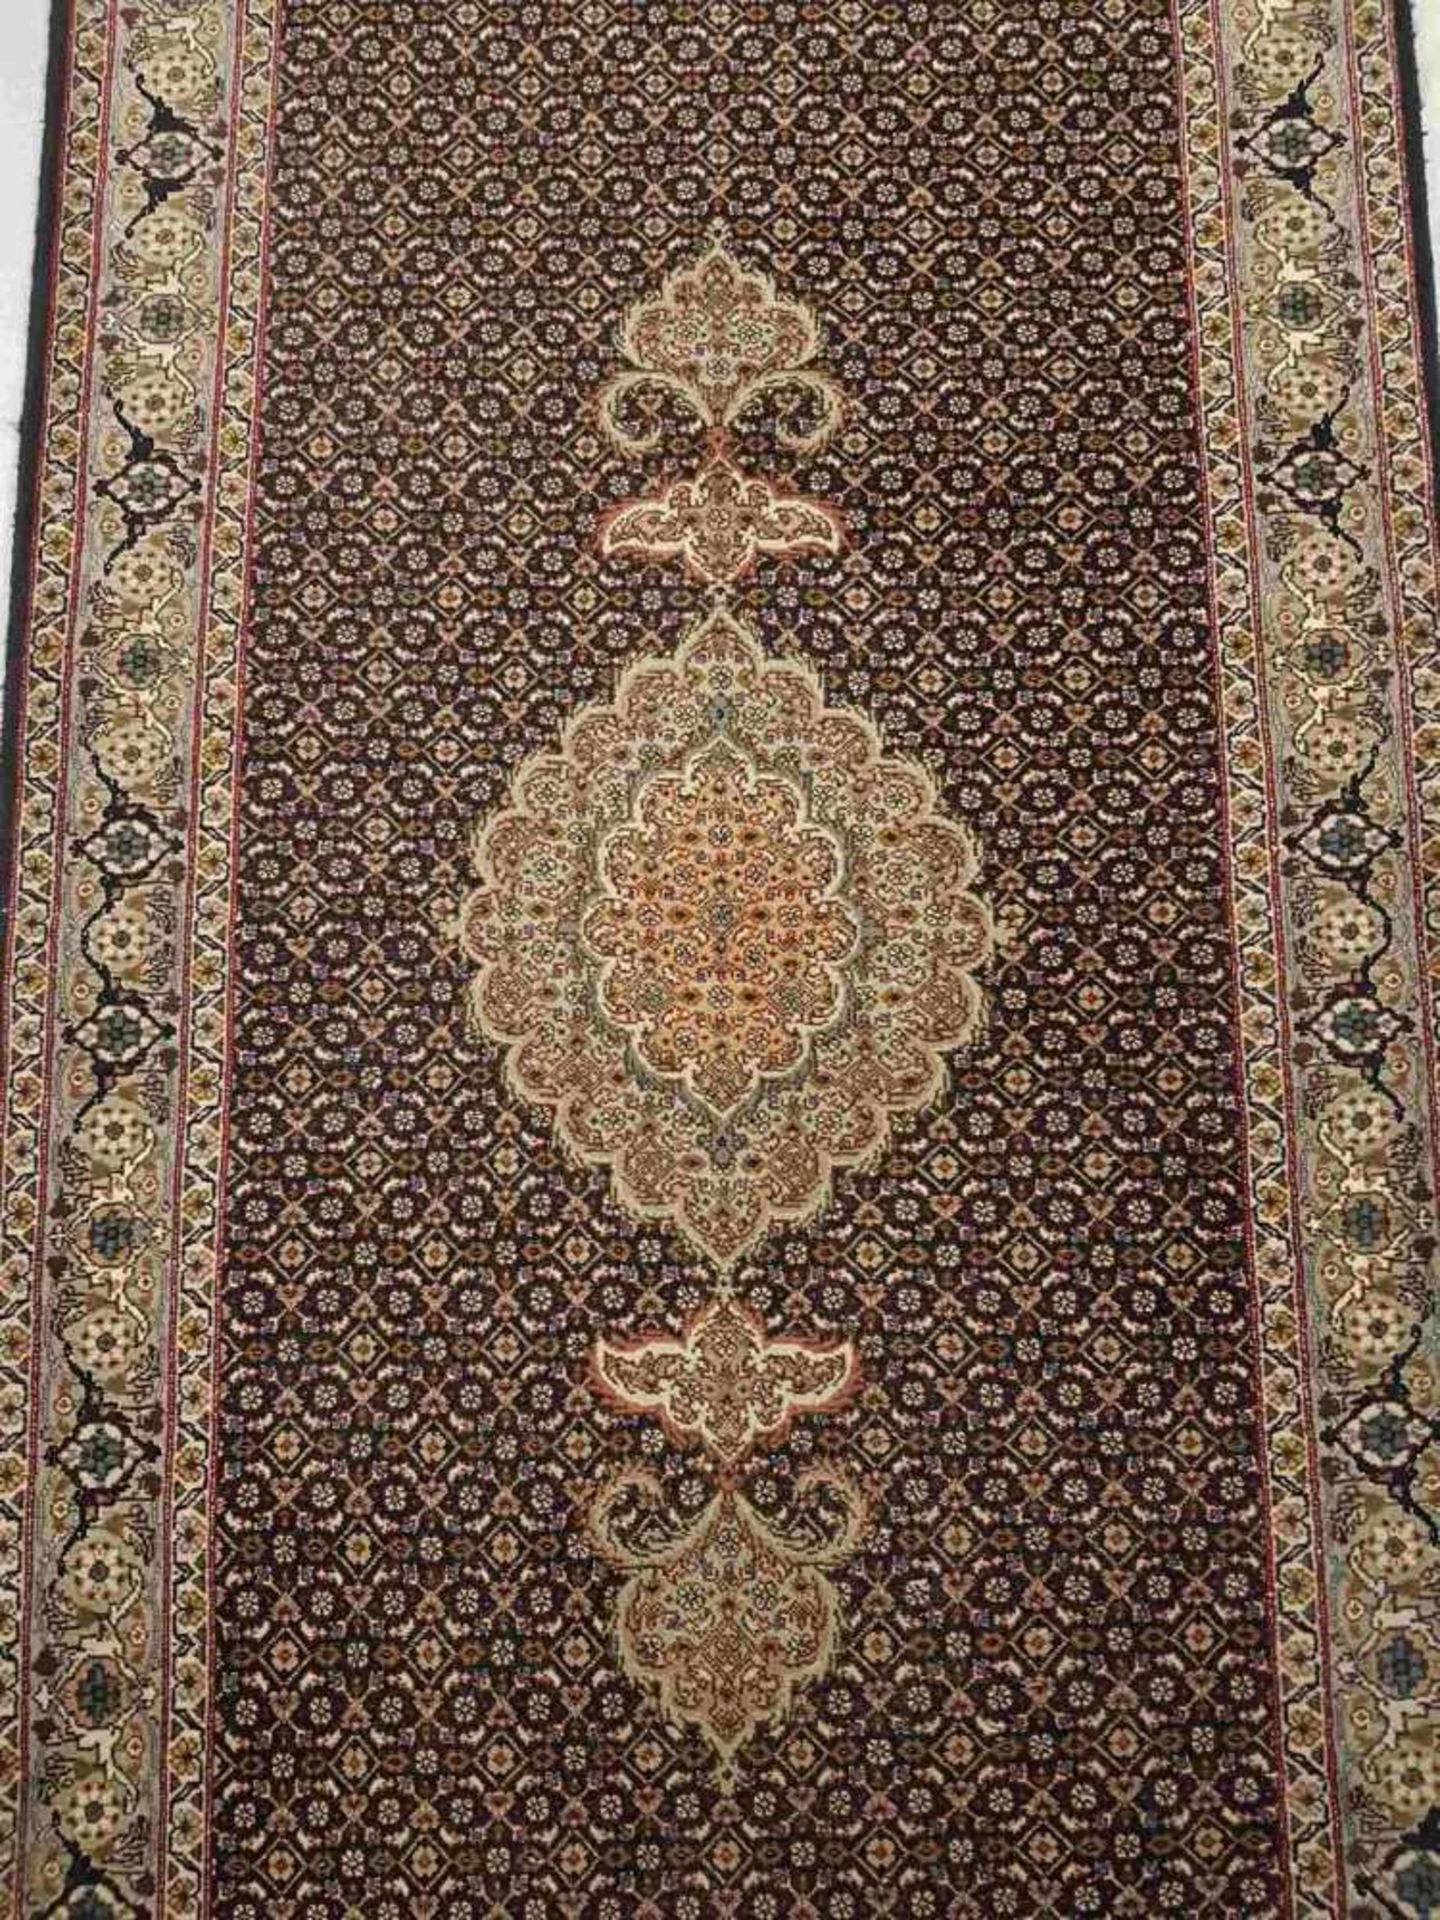 Orientteppich - Täbris, Iran, handgeknüpft, Indigo grundig, Medaillon, ornamentaler Dekor, - Bild 2 aus 5